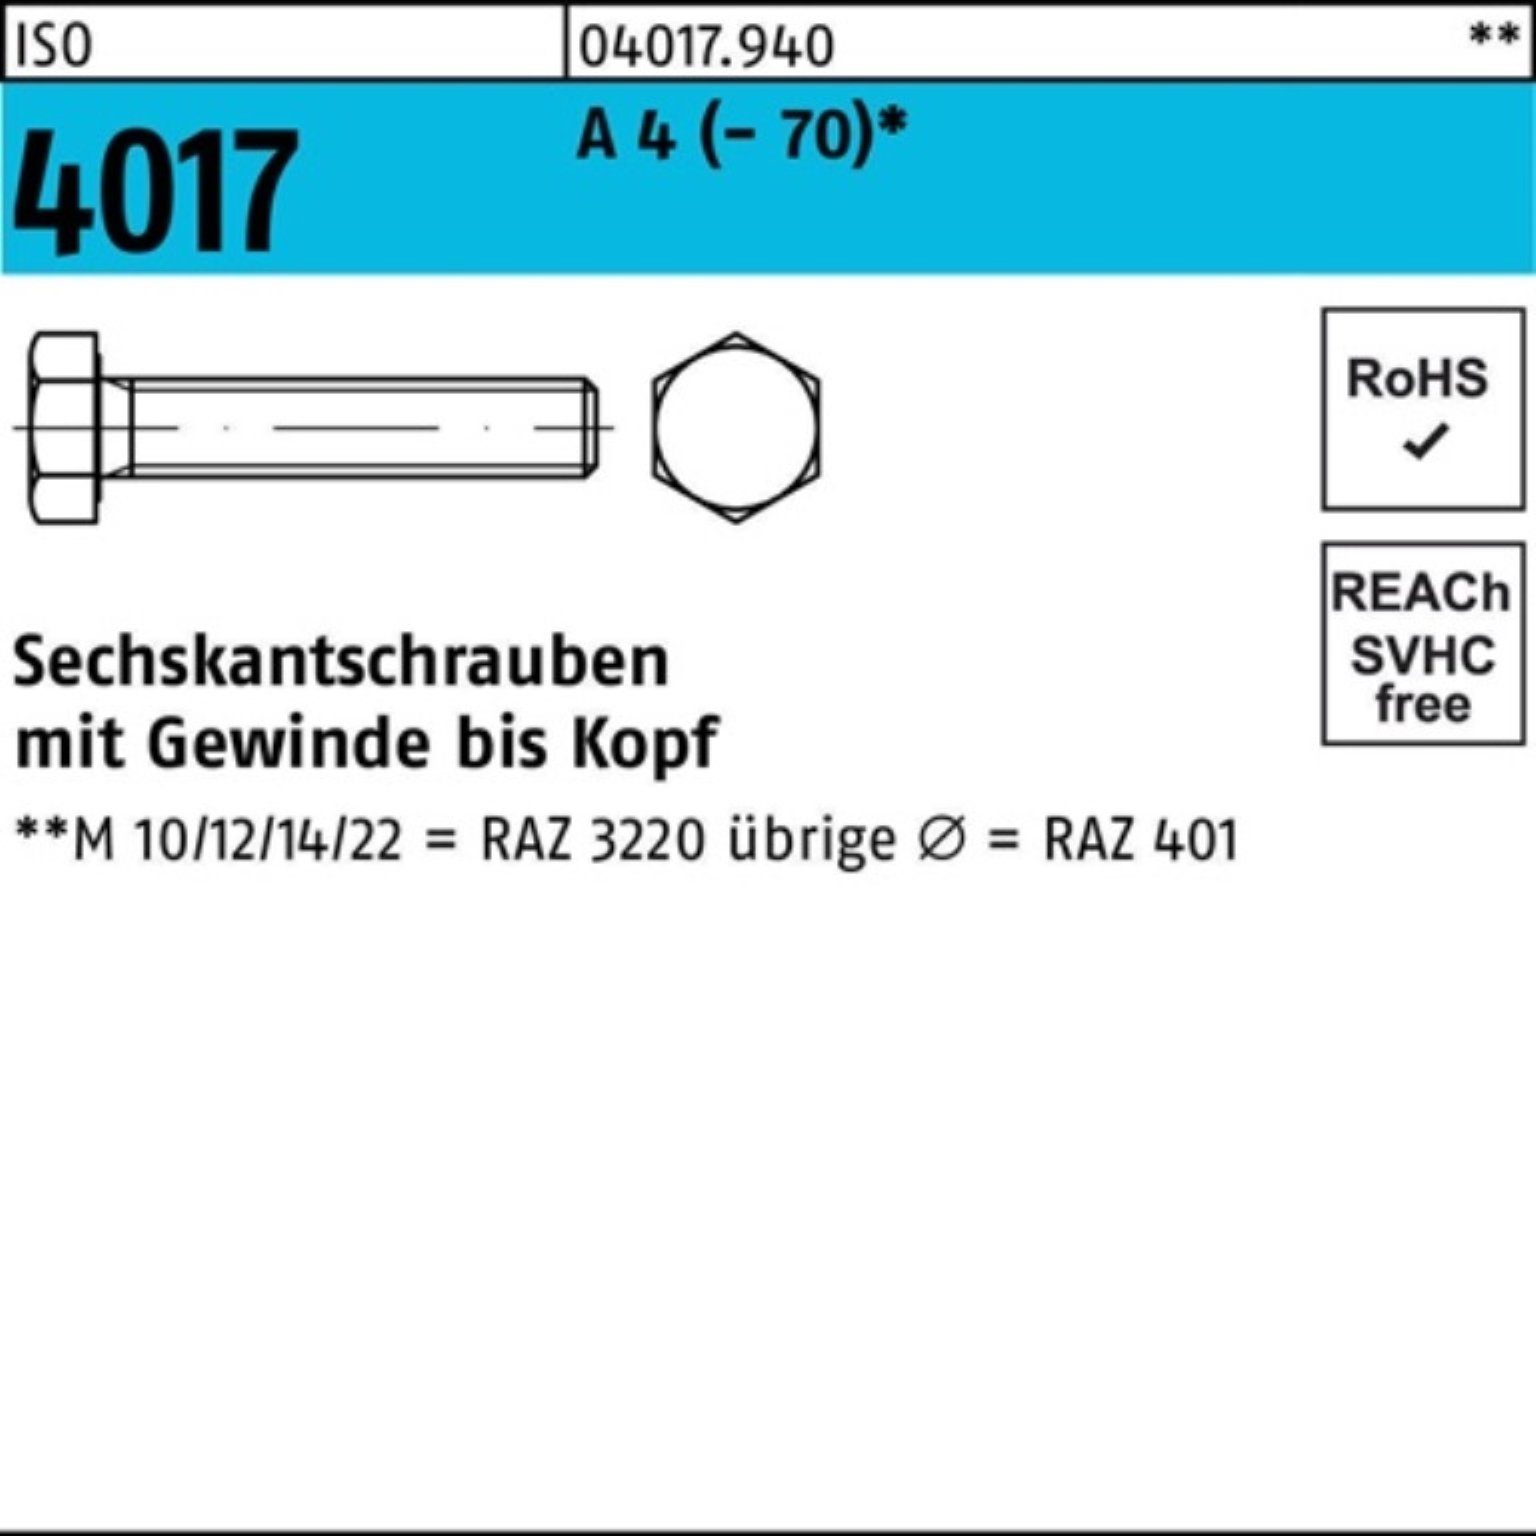 Bufab Sechskantschraube 100er Pack Sechskantschraube ISO 4017 VG M6x 50 A 4 (70) 100 Stück